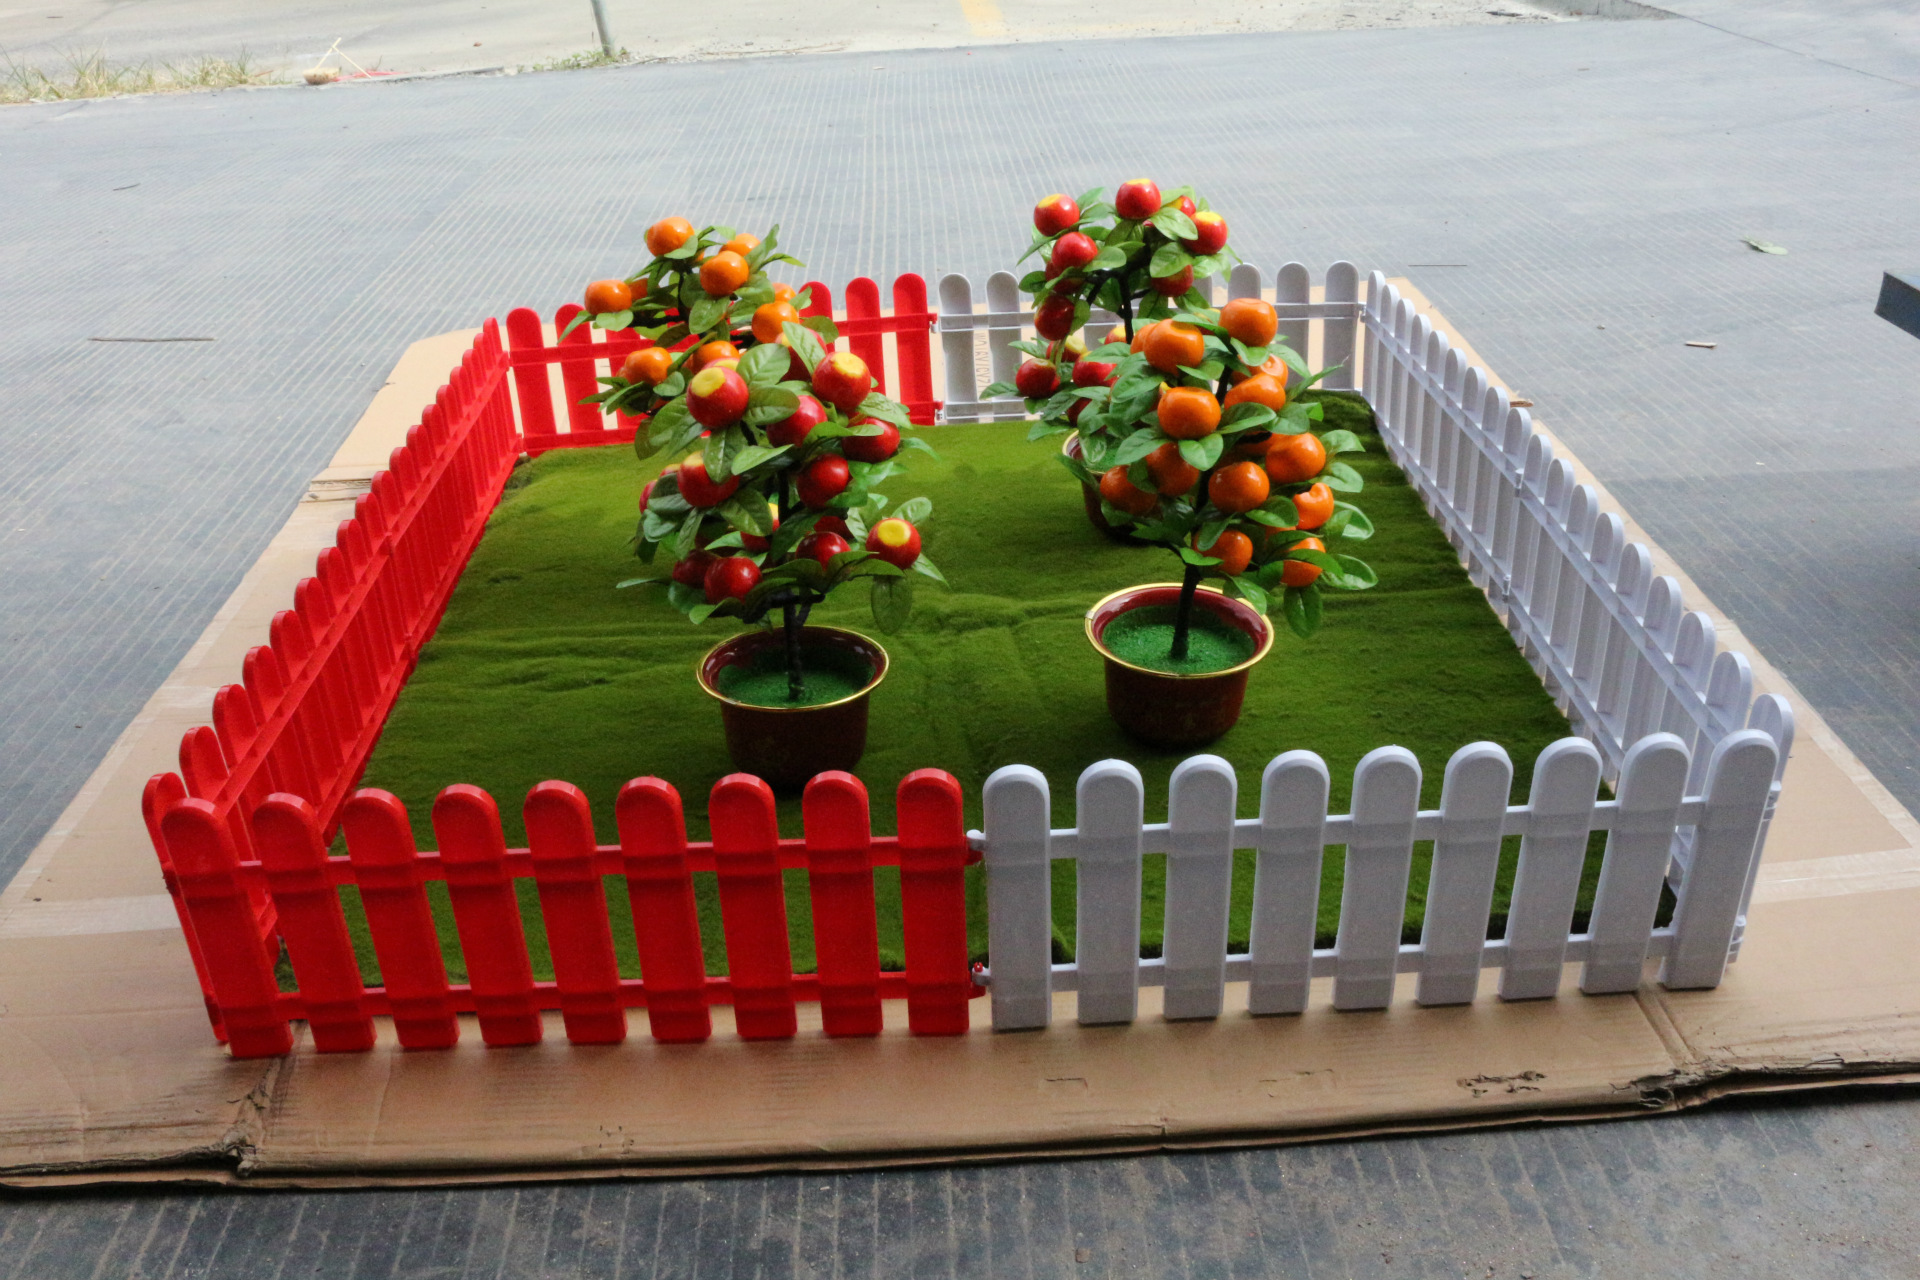 充满活力的友好型庭院：上海树桌花园 - hhlloo